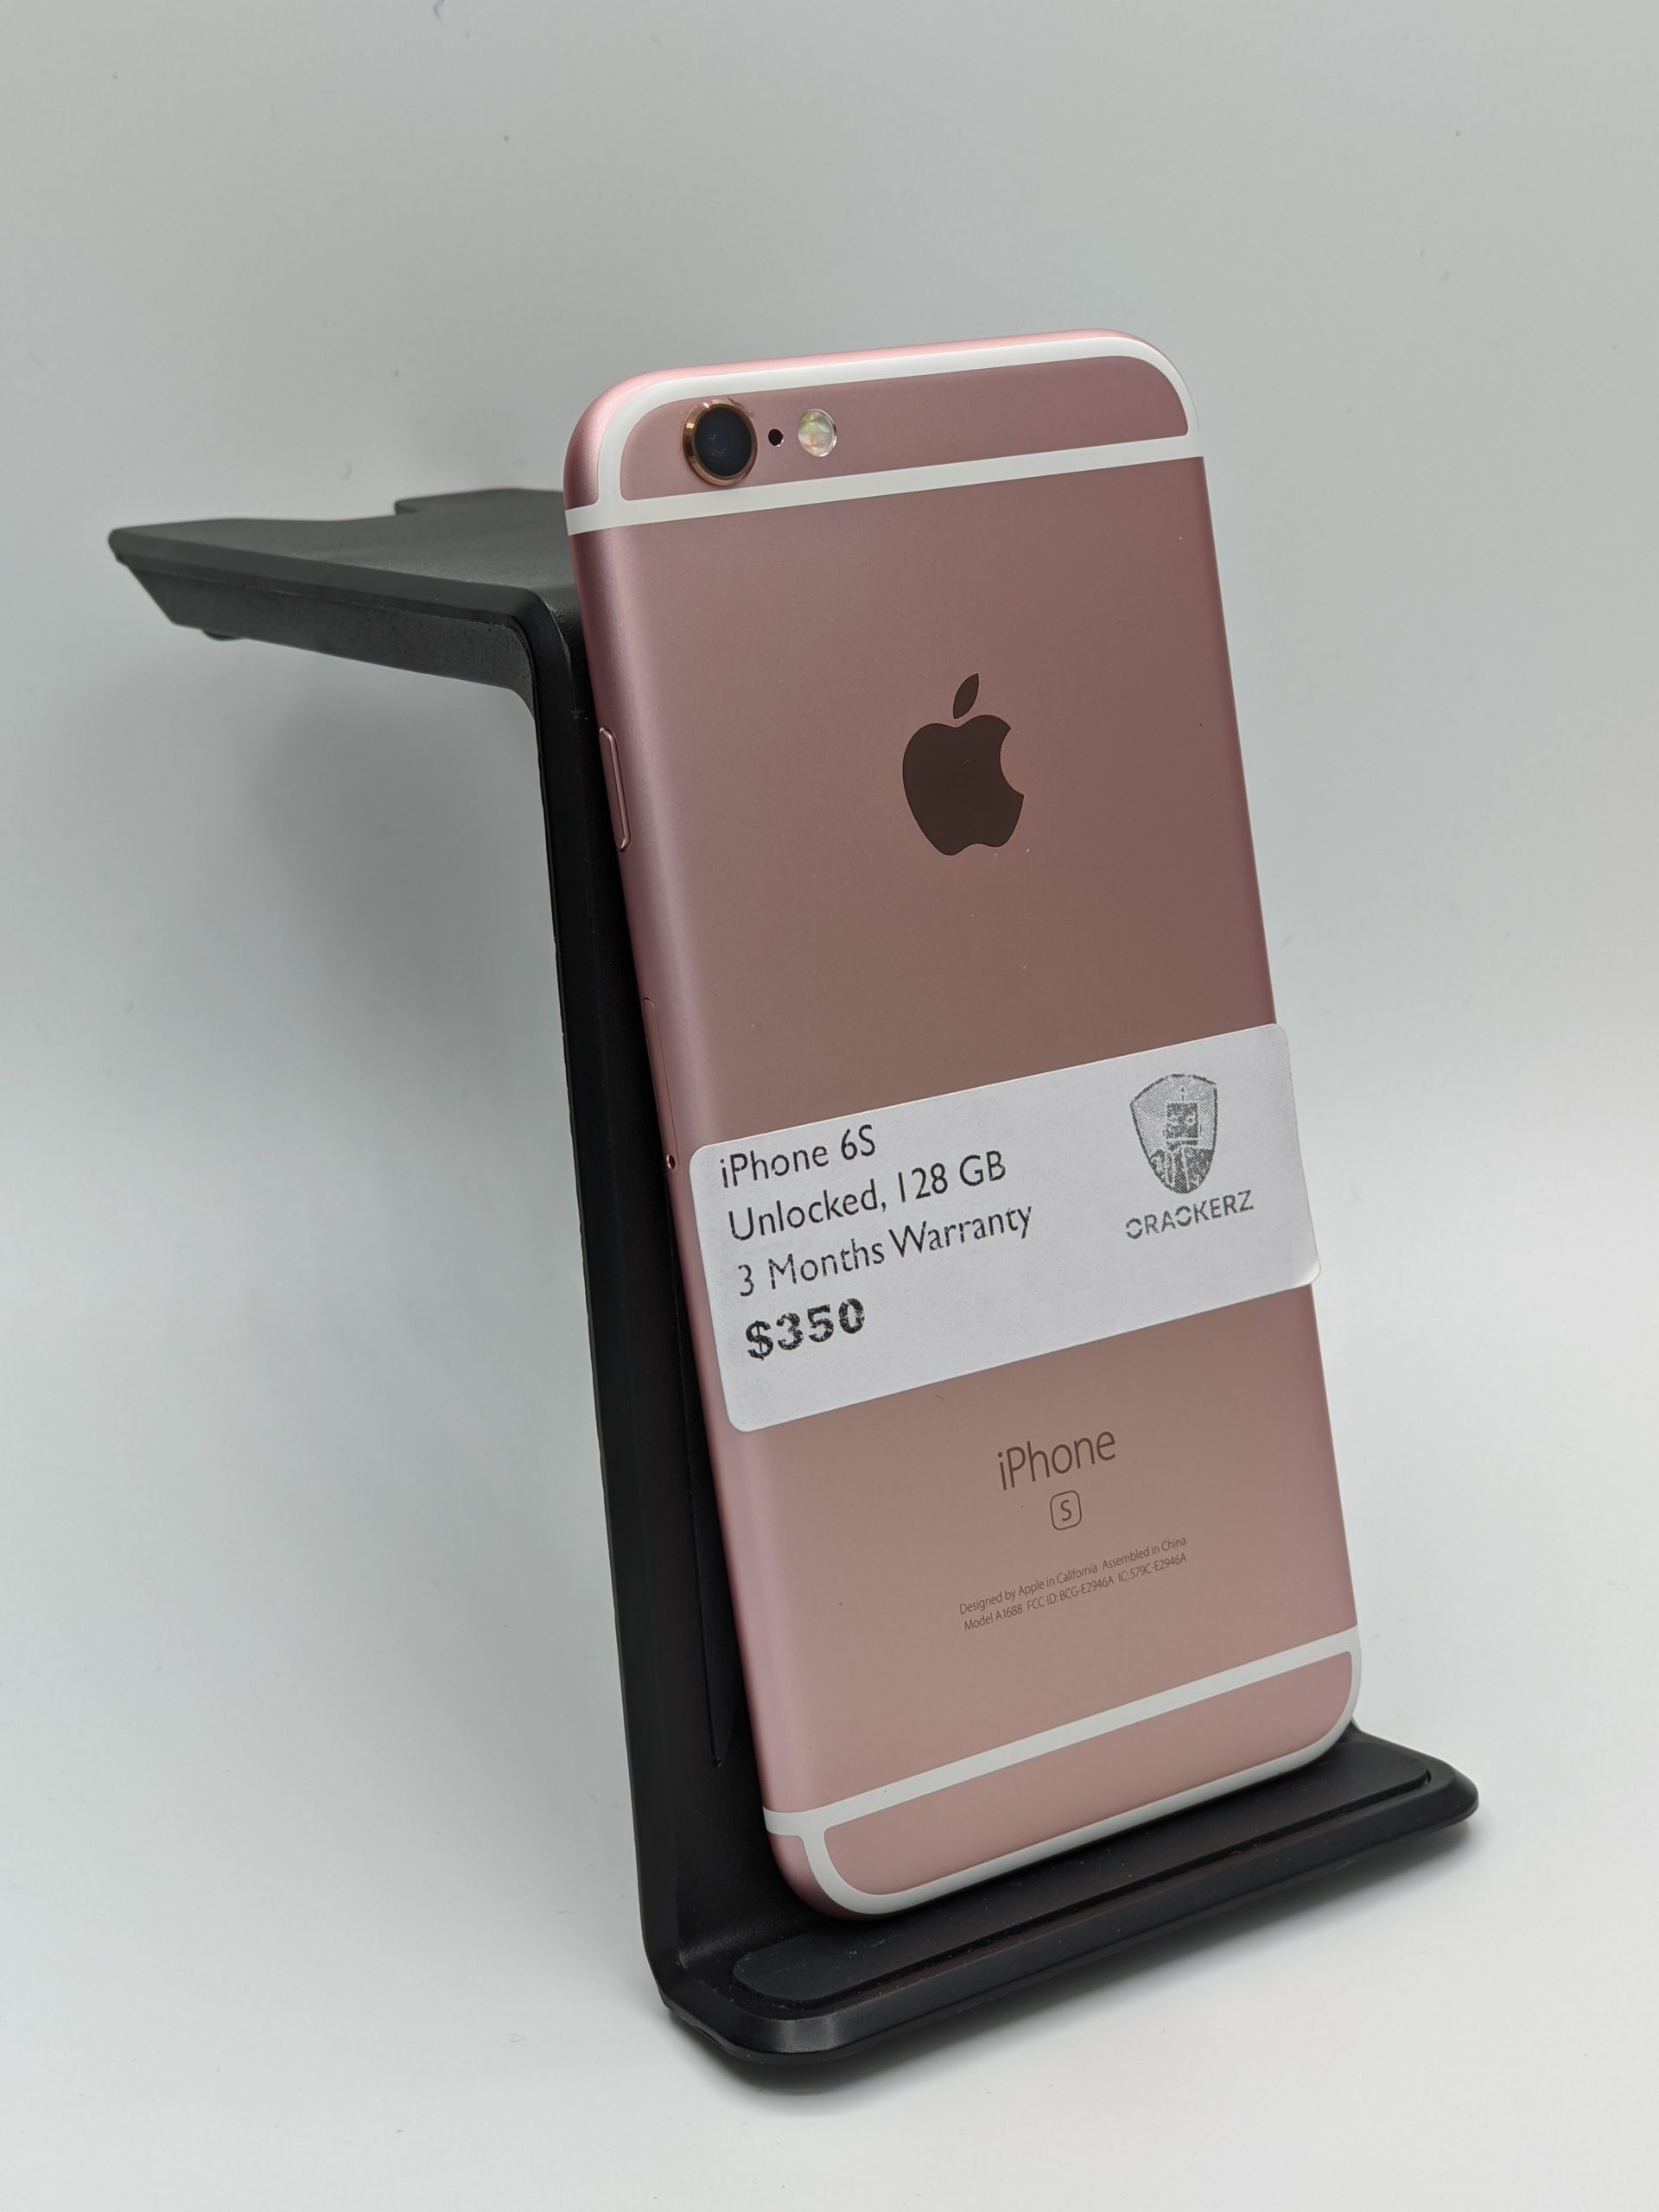 近鉄京都線 iPhone 6 Gold 128 GB docomo スマートフォン本体